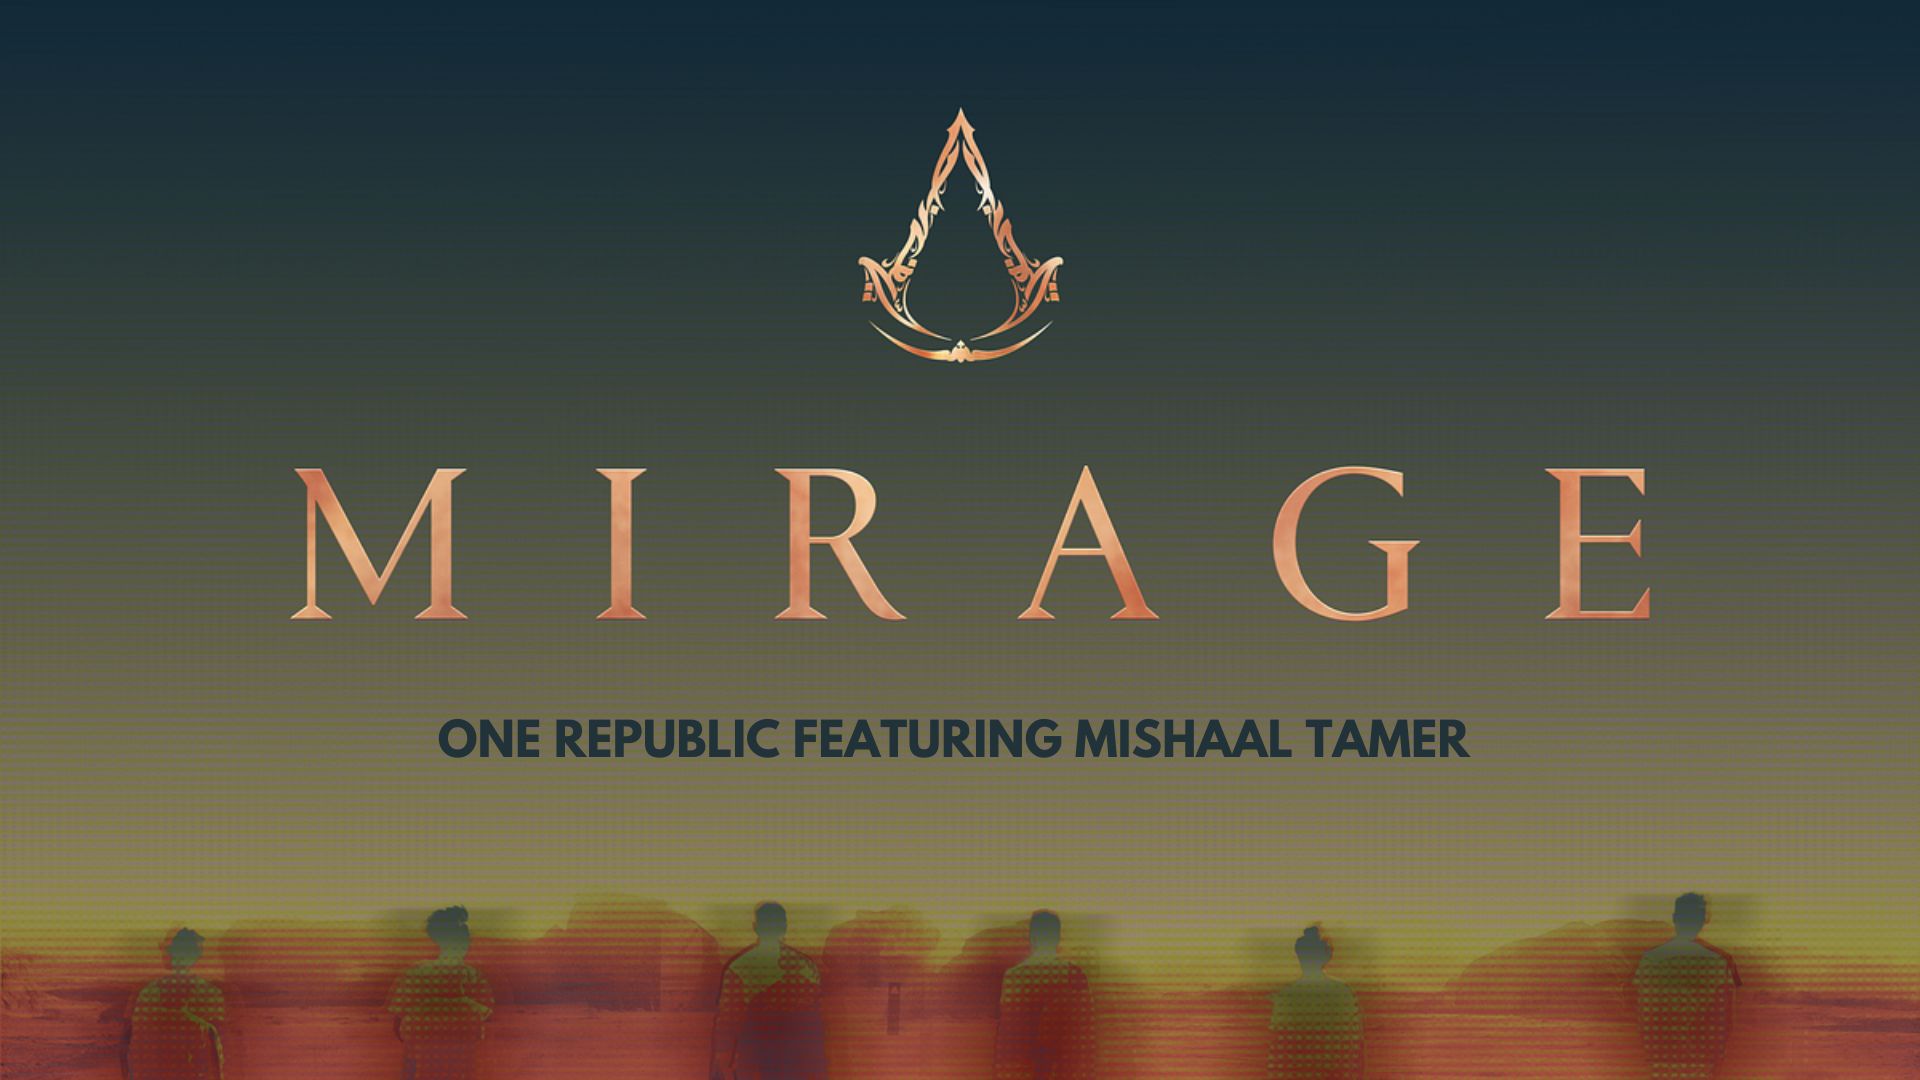 أغنية مميزة قادمة للعبة Assassin’s Creed Mirage بالتعاون مع مغني عربي